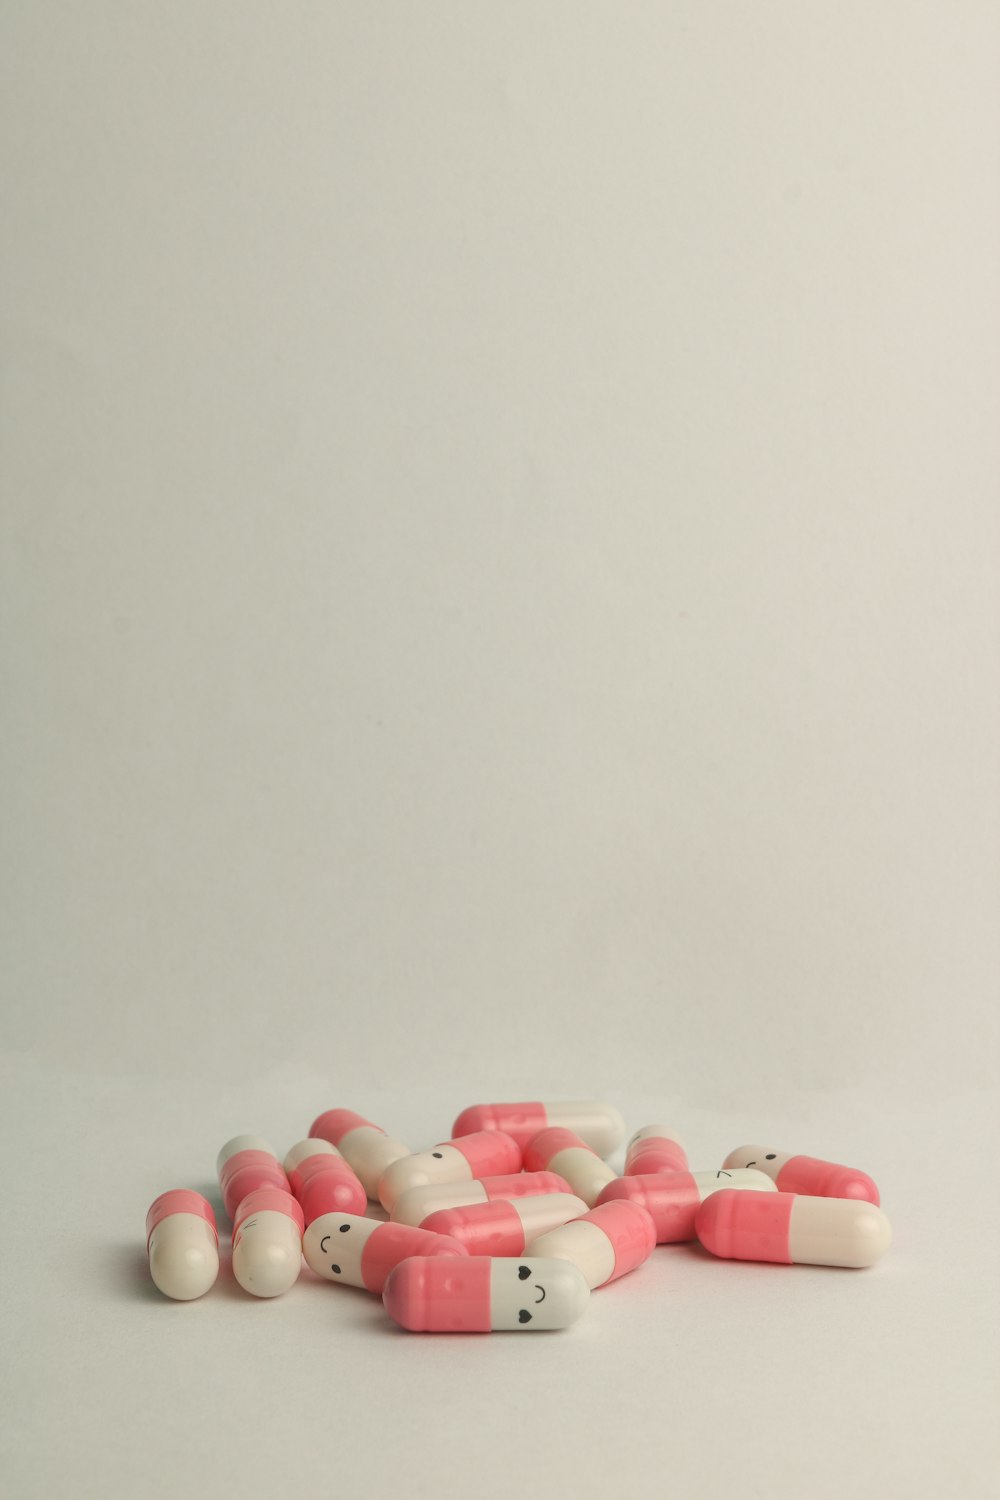 pílula de medicação rosa e branca